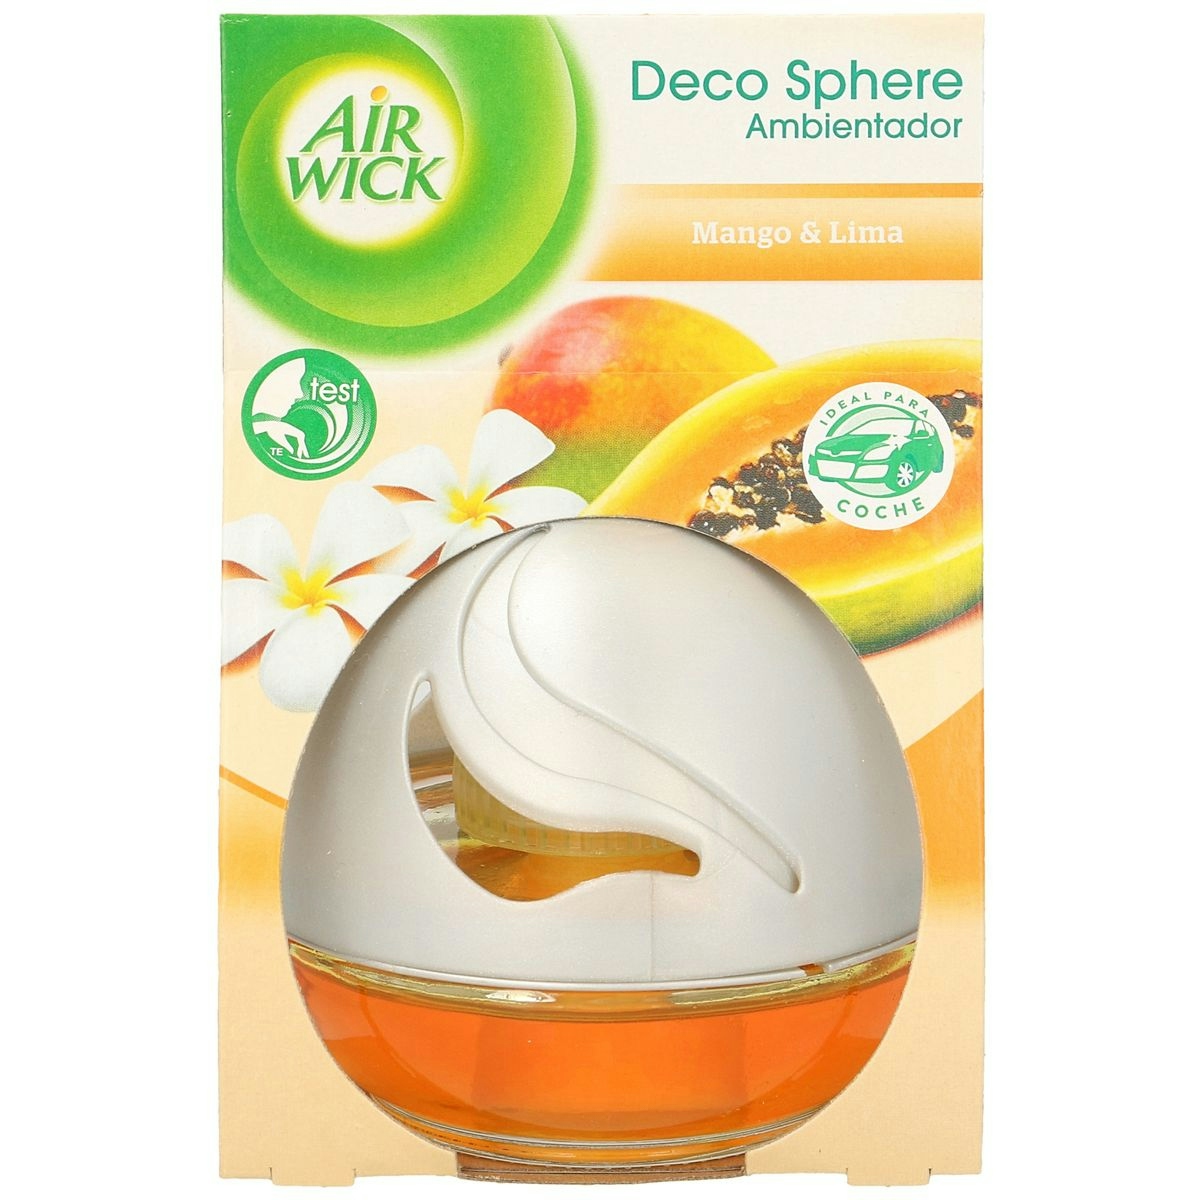 Decosphere ambientador aroma mango AIRWICK 1 ud